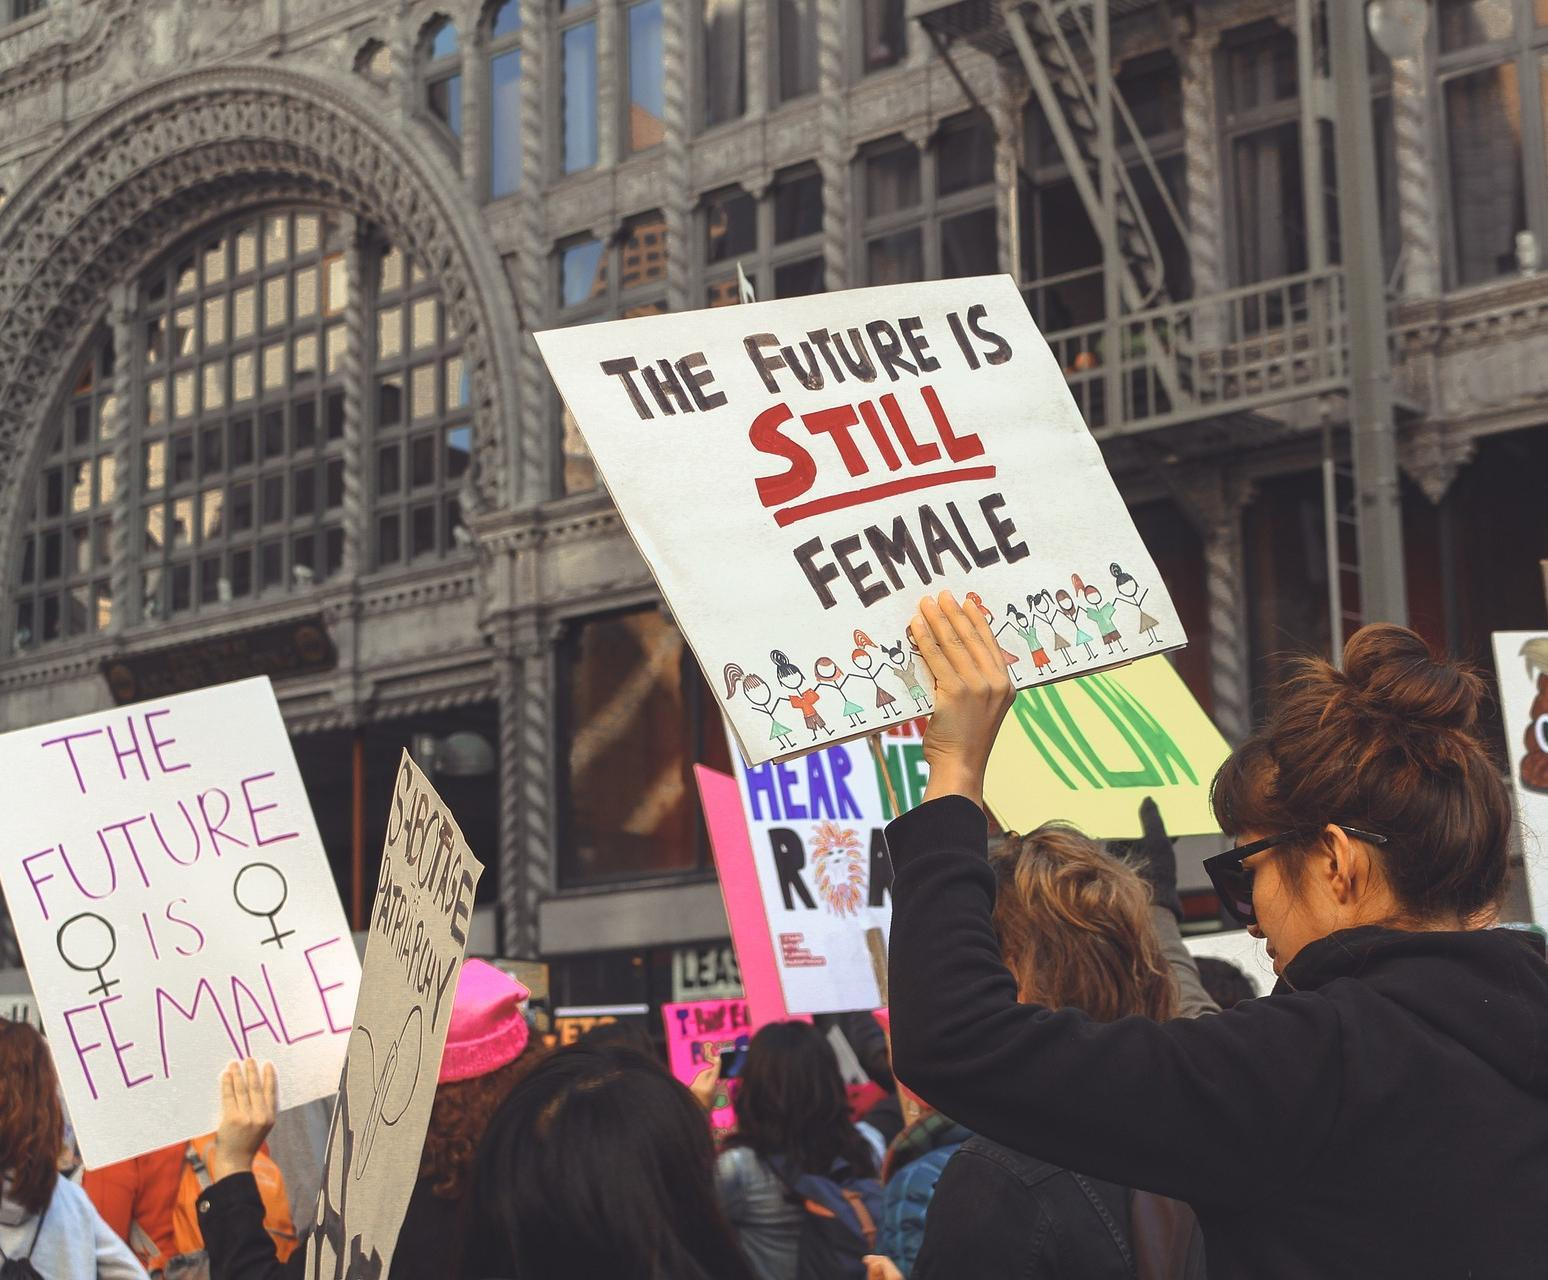 Menschen auf einem Protest, auf einem Plakat der Slogan "The future is still female"